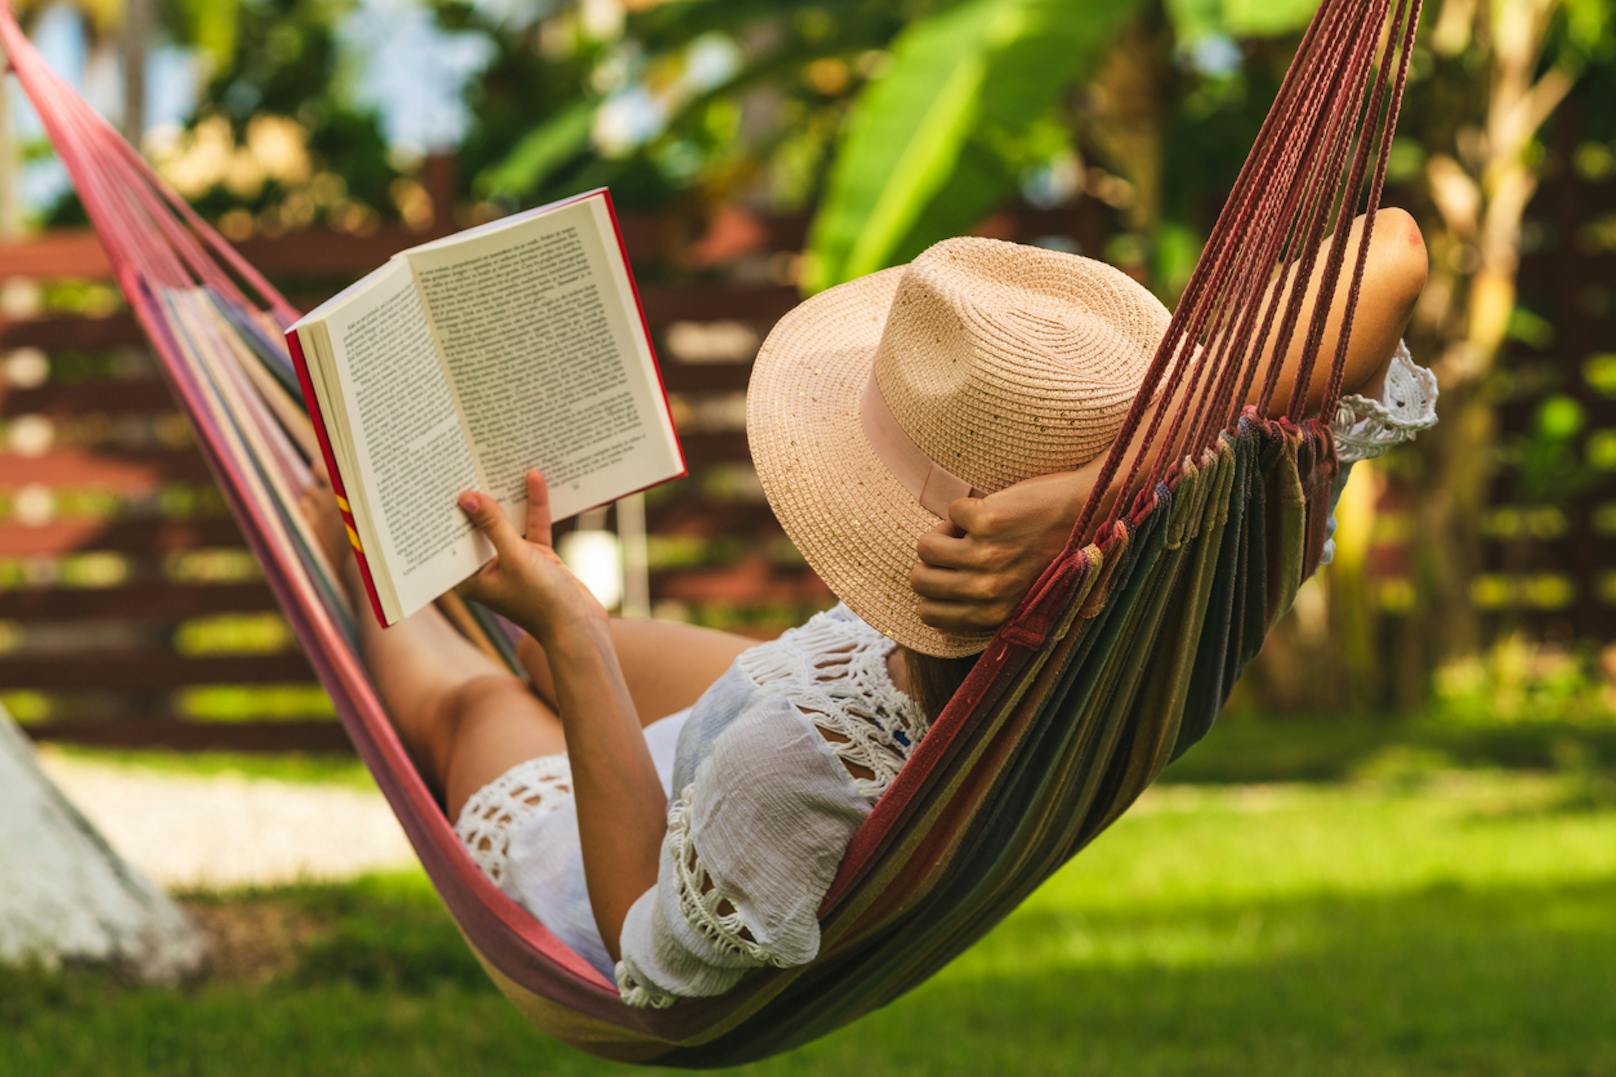 Beim Lesen in eine andere Welt eintauchen ... Urlaub im Kopf!